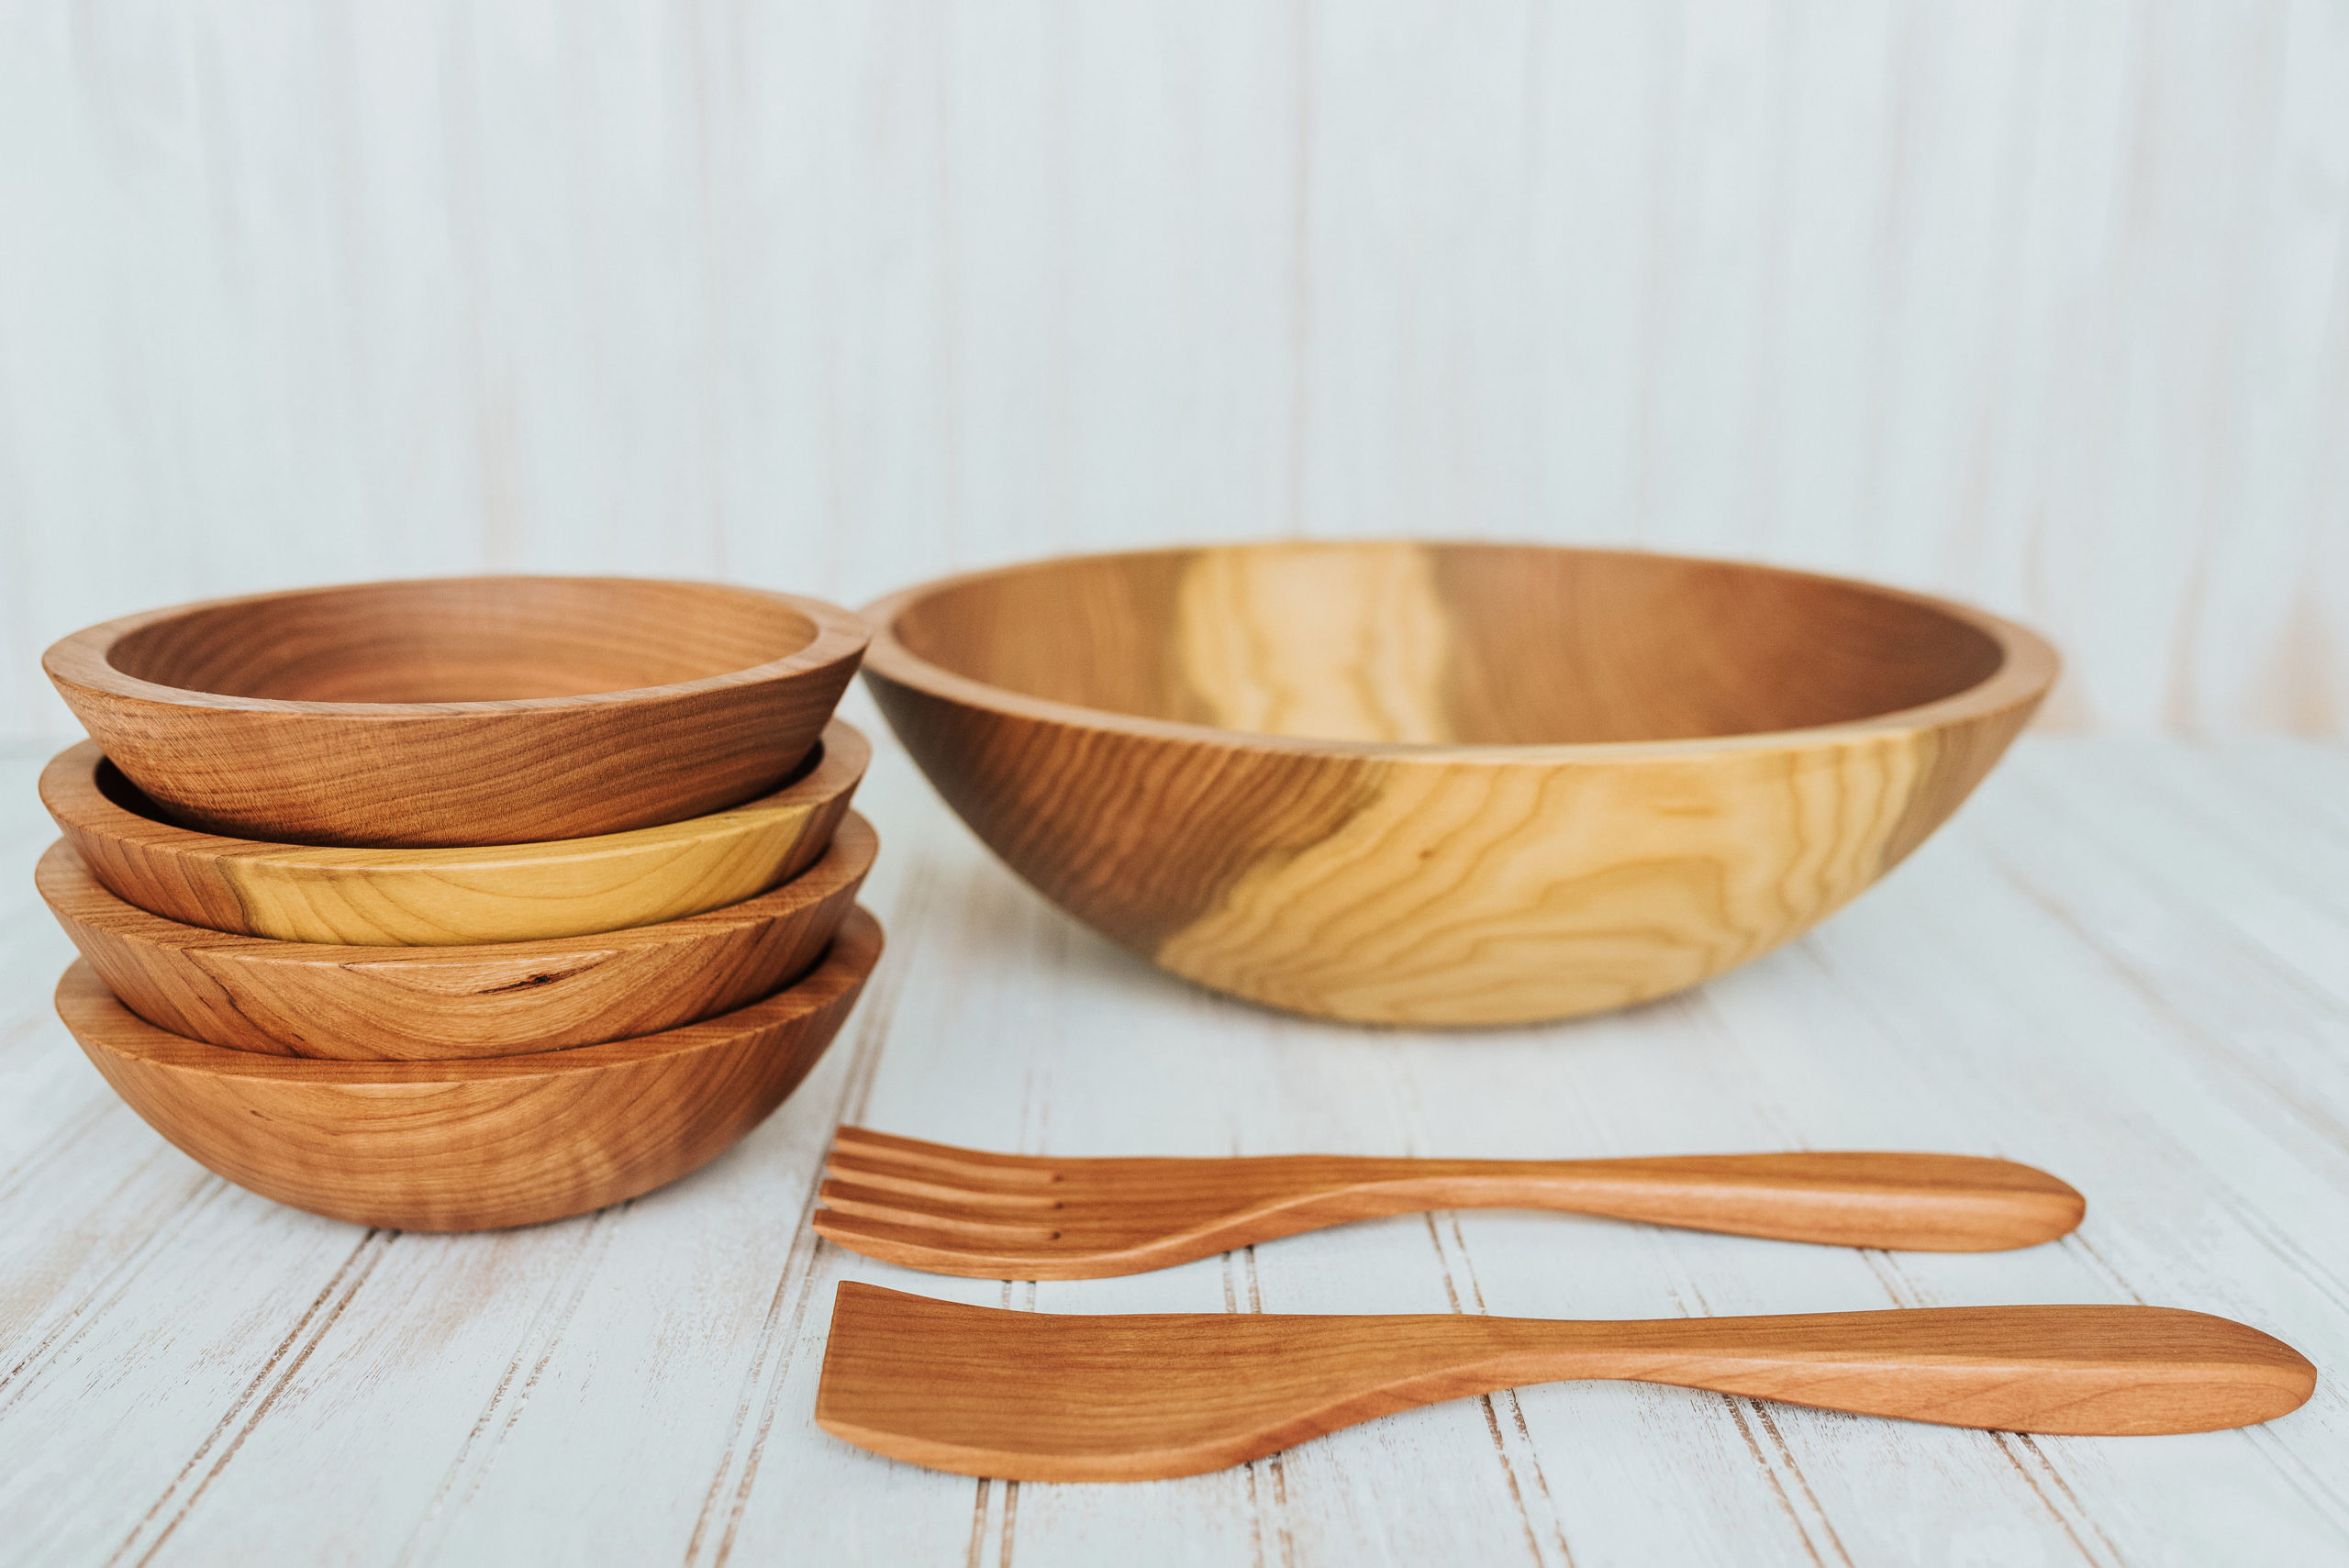 Dark Walnut Wooden Bowl Set  15-inch Serving Bowl with Utensils